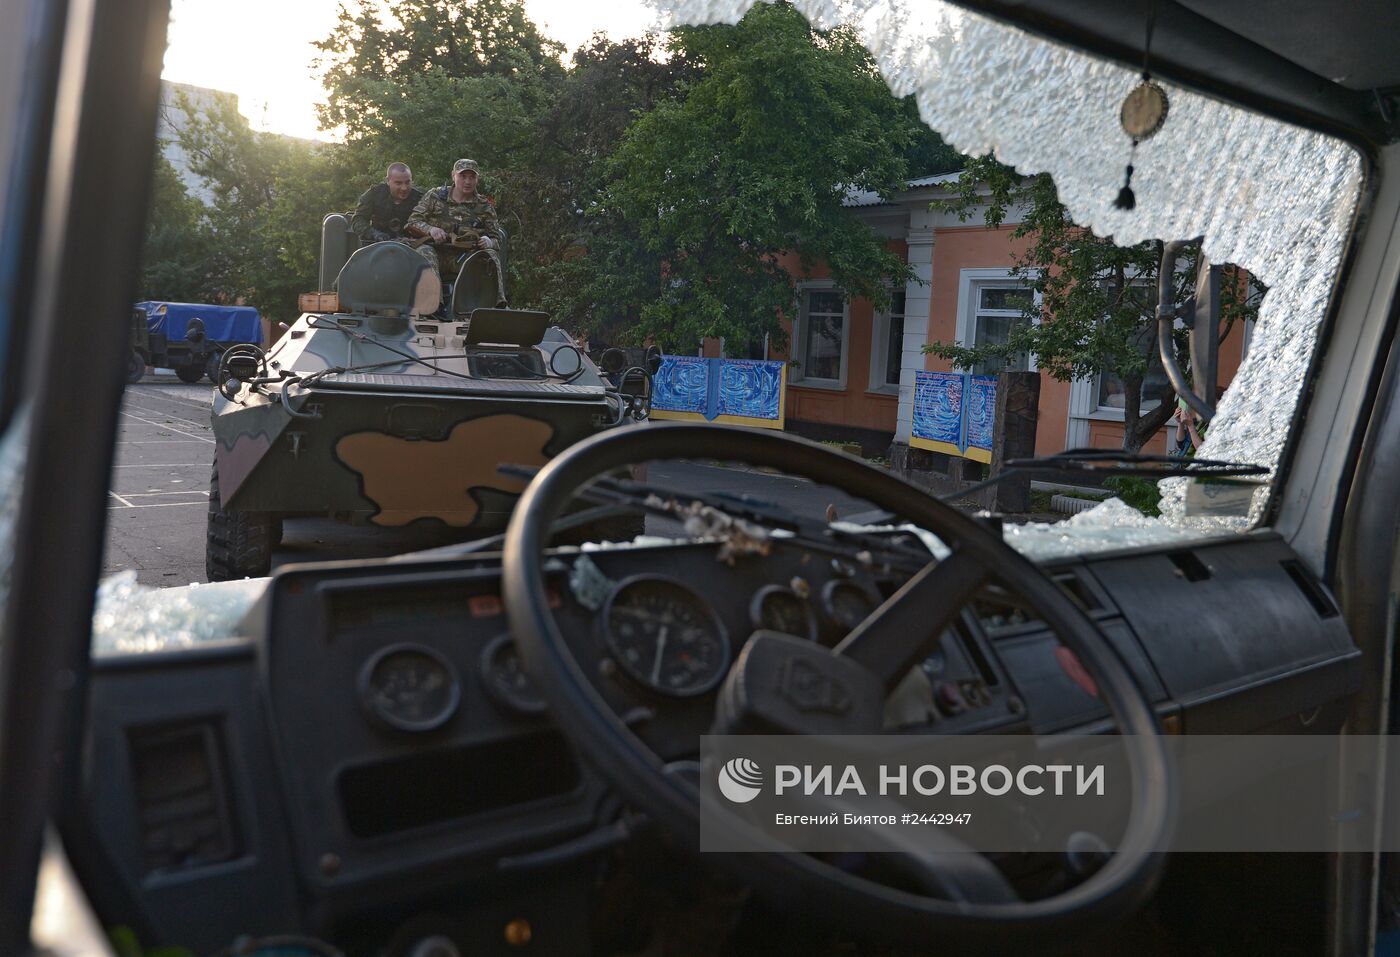 Ополченцы установили контроль над воинской частью в Луганске